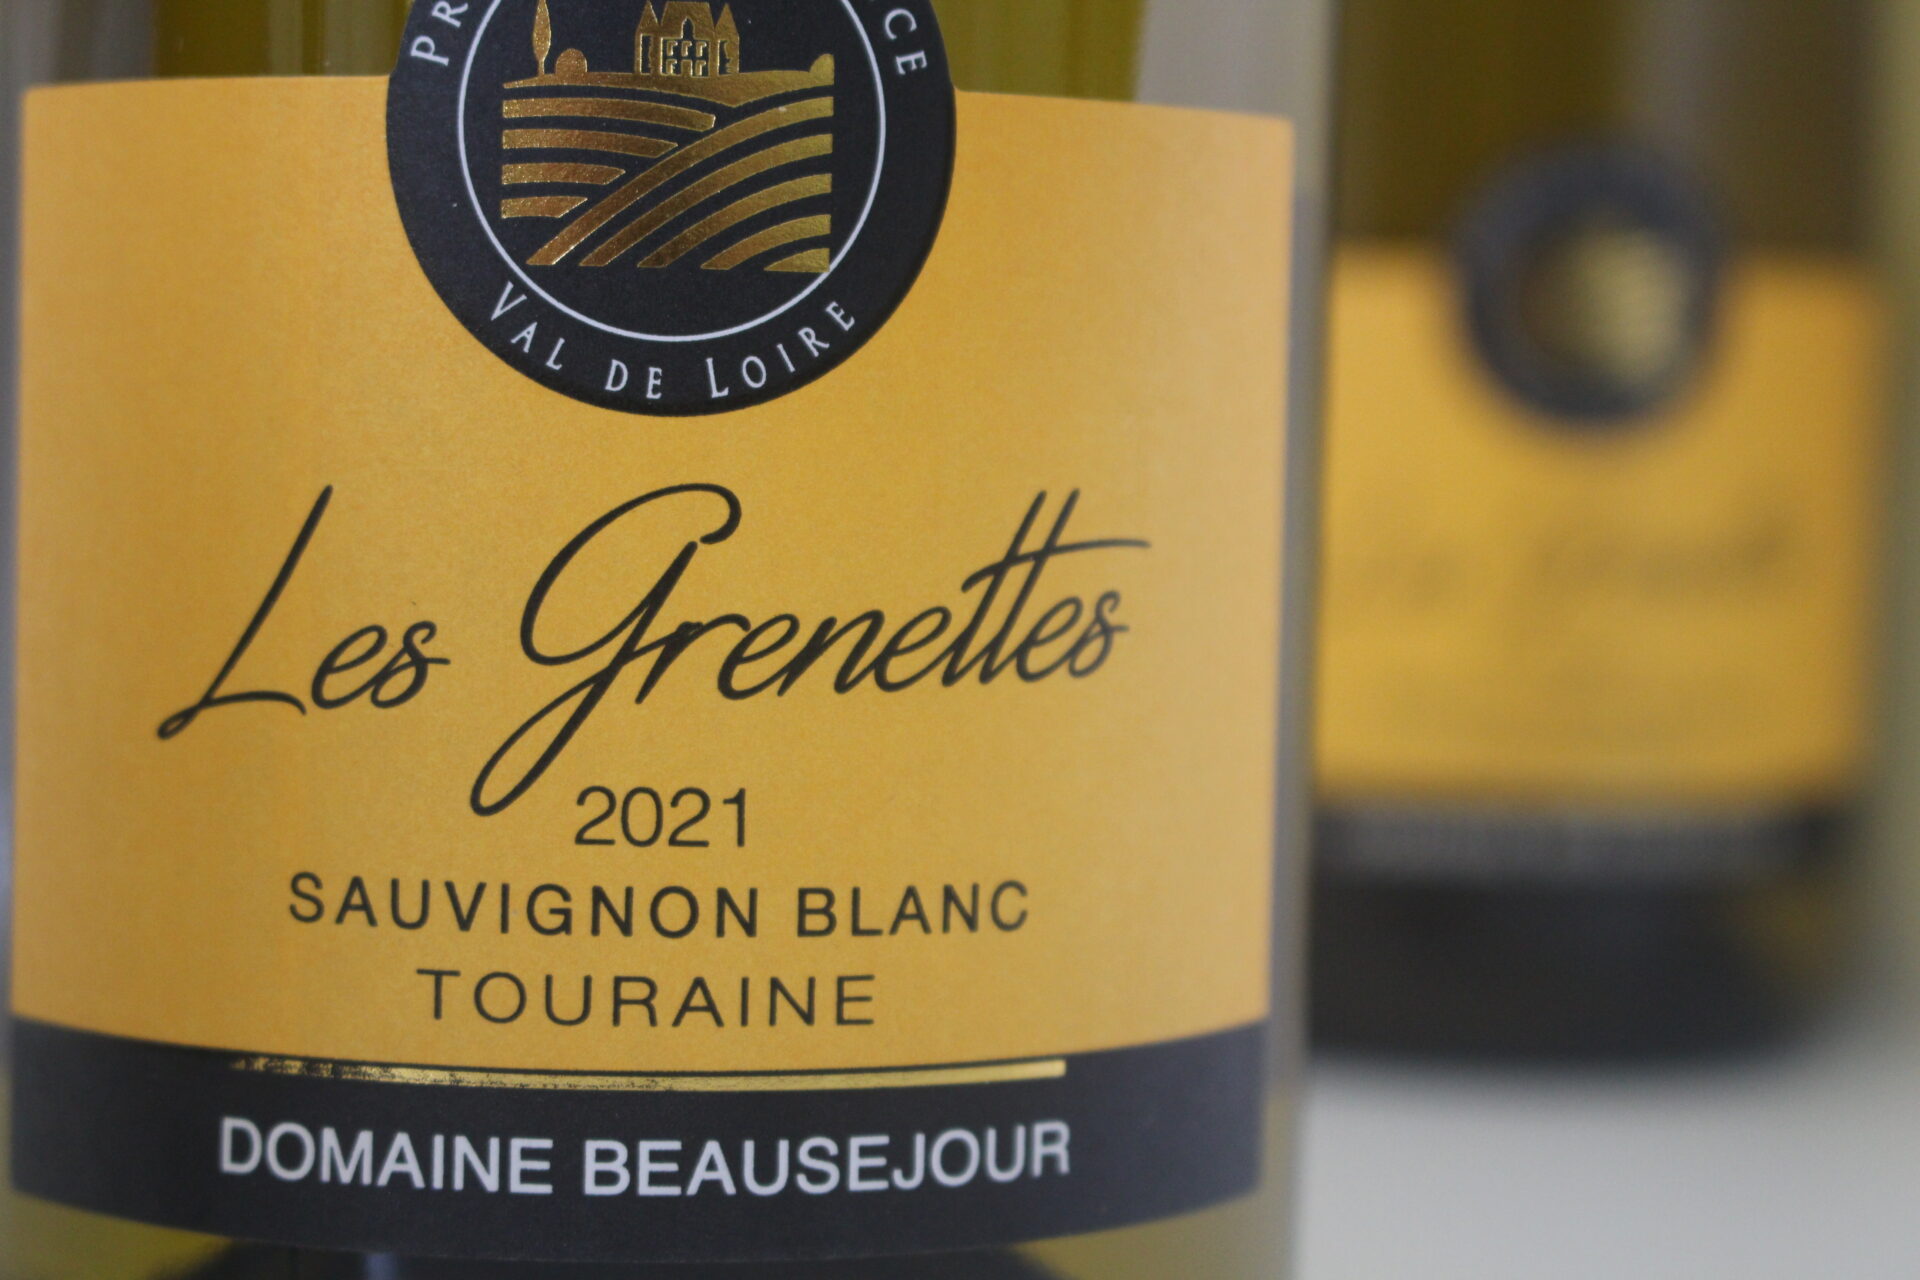 Champagne en wijnen de blender Les Grenettes Val de Loire